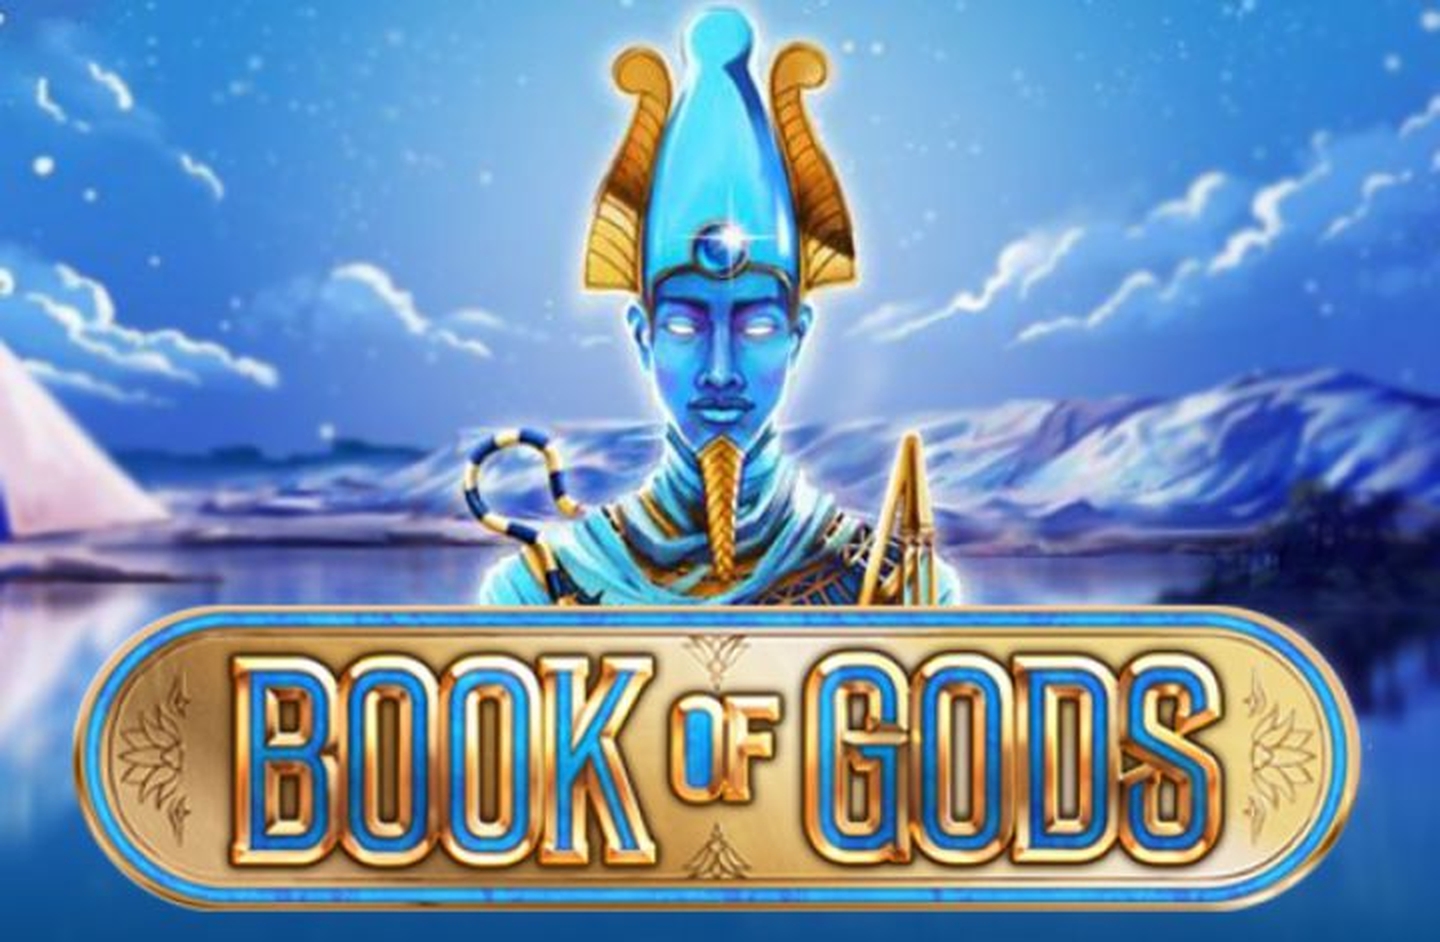 Book of Gods demo